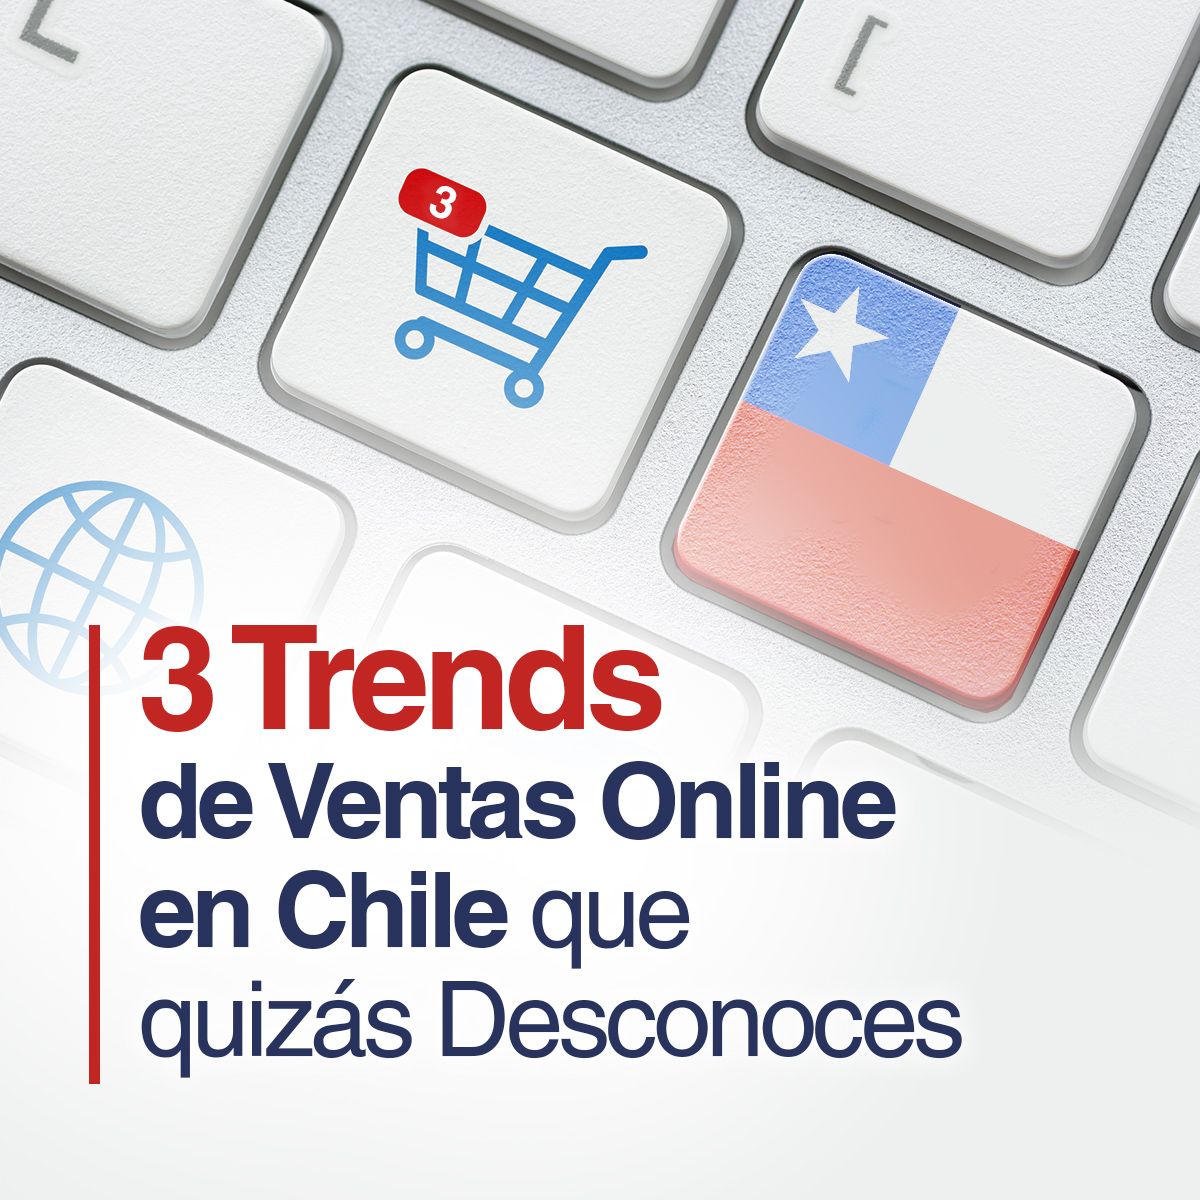 3 Trends de Ventas Online en Chile que quizás Desconoces